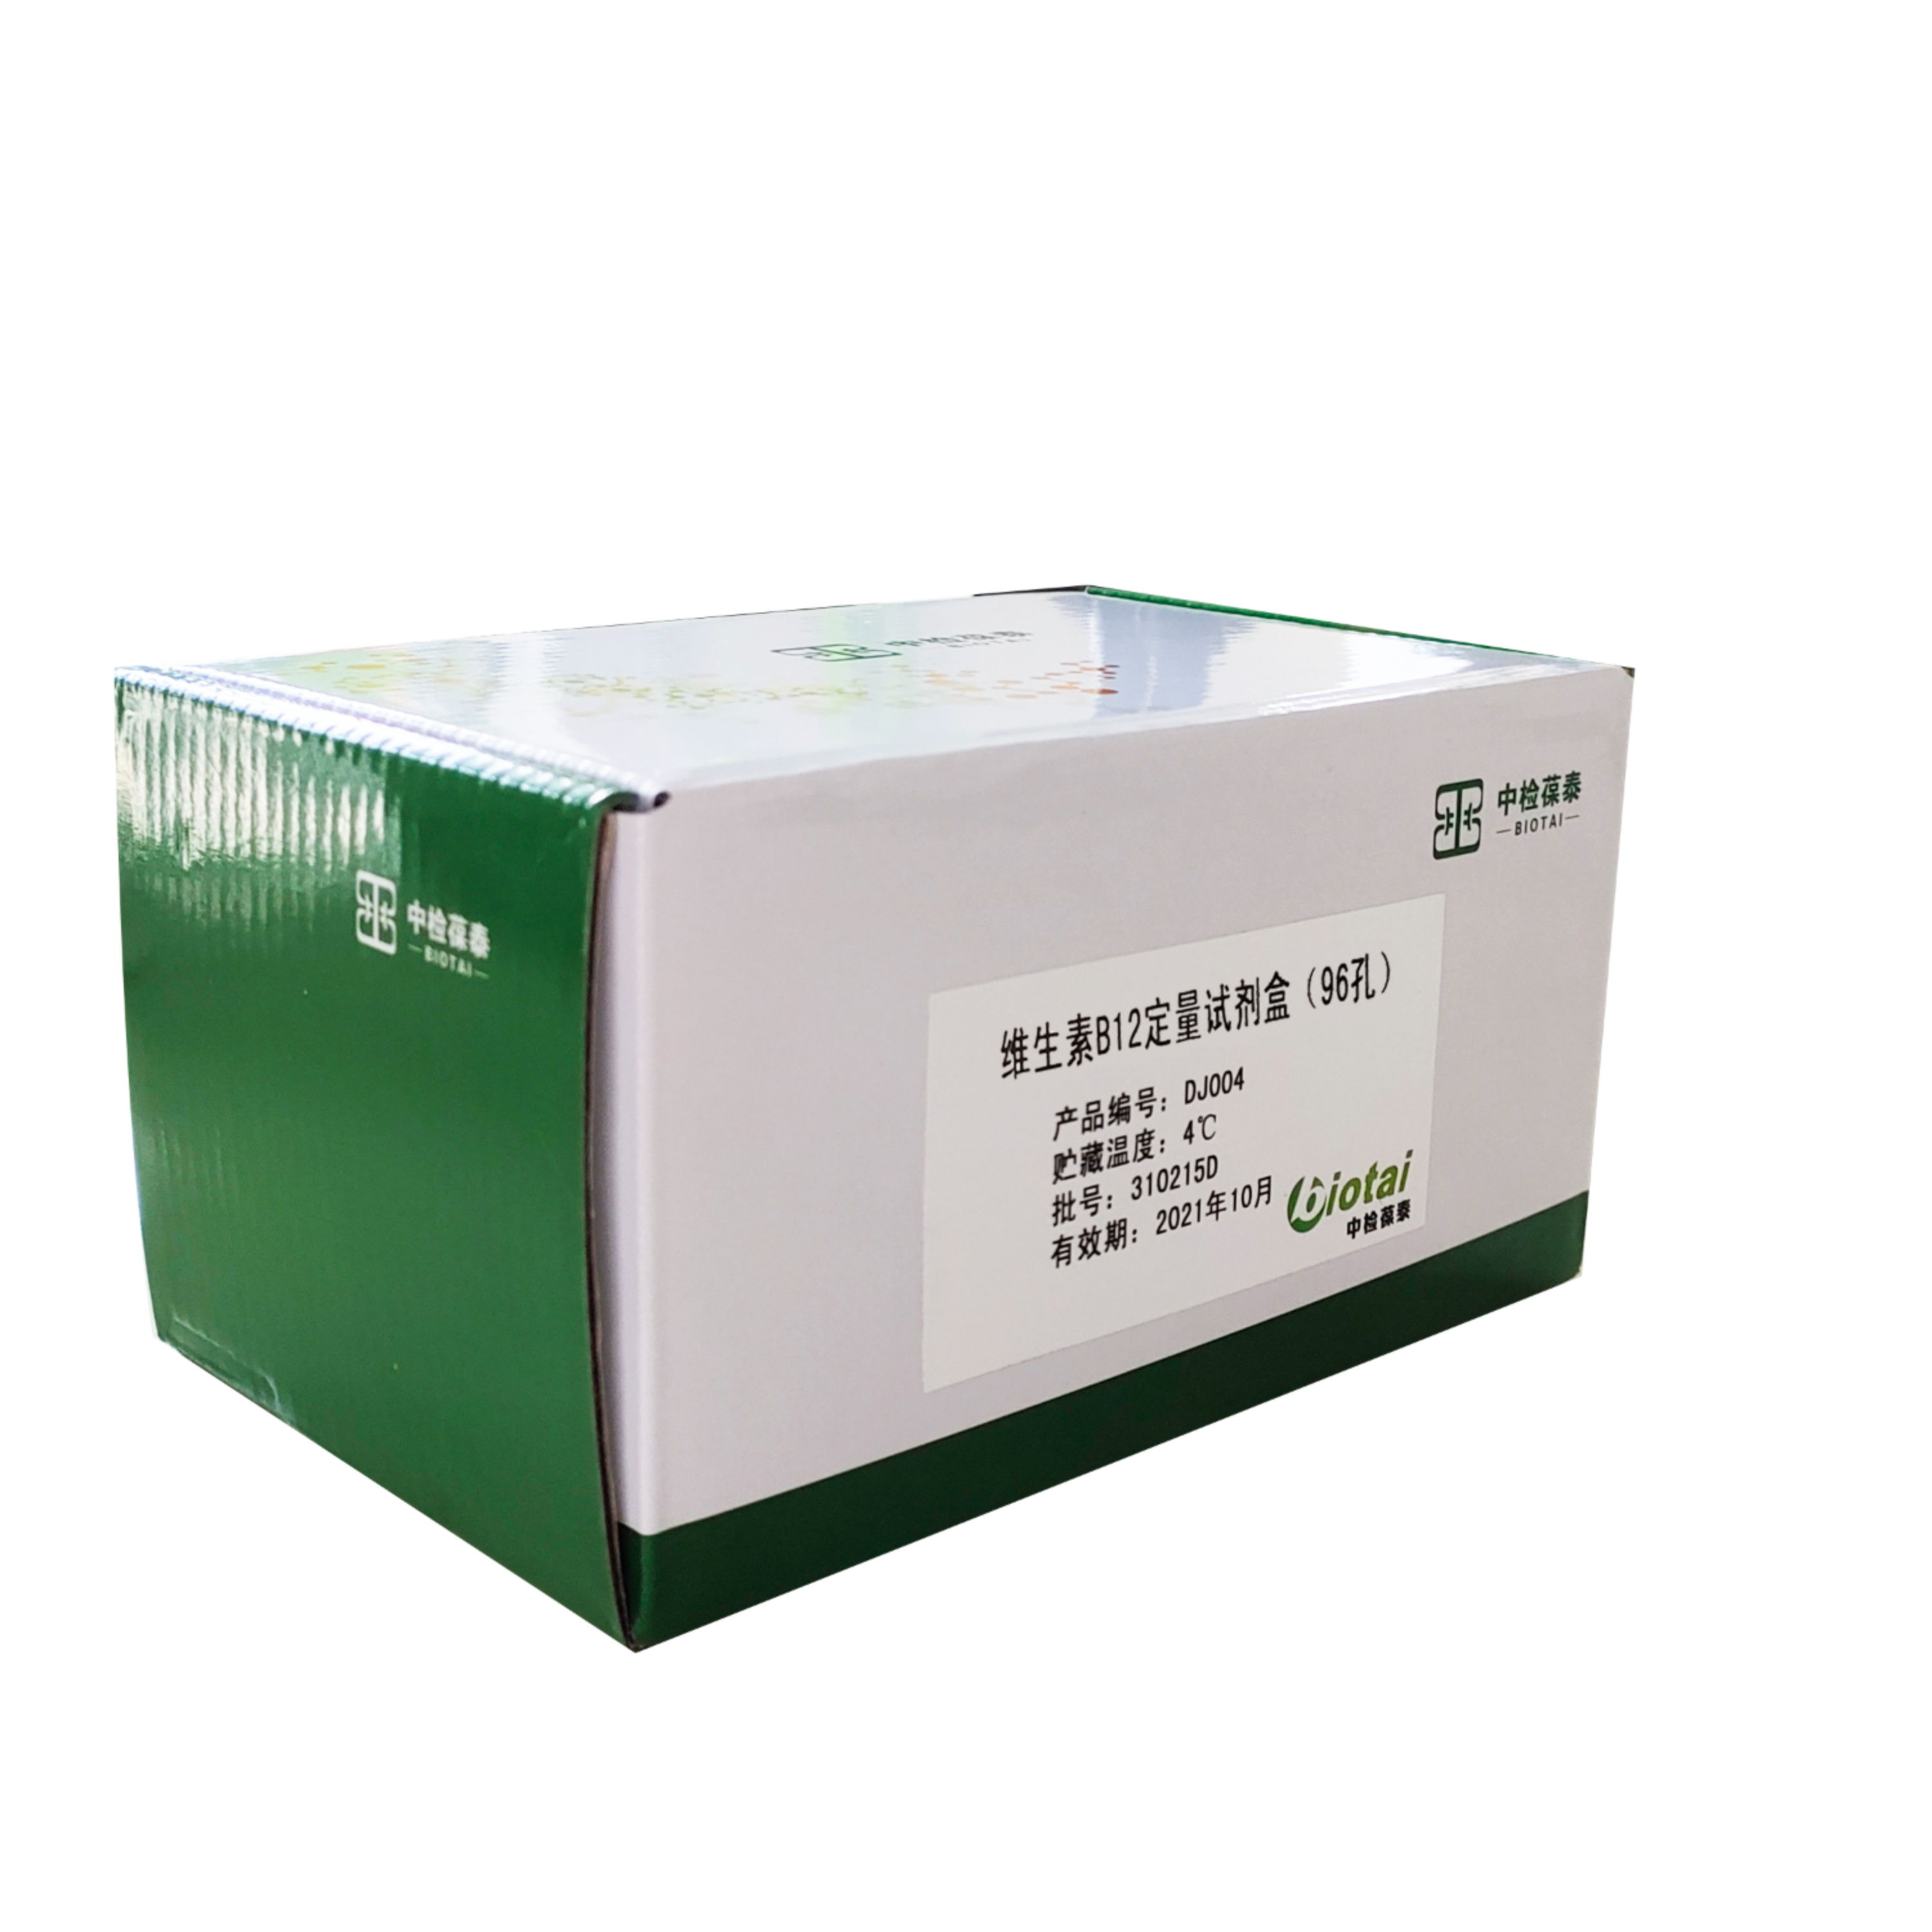 维生素 B7 /生物素试剂盒